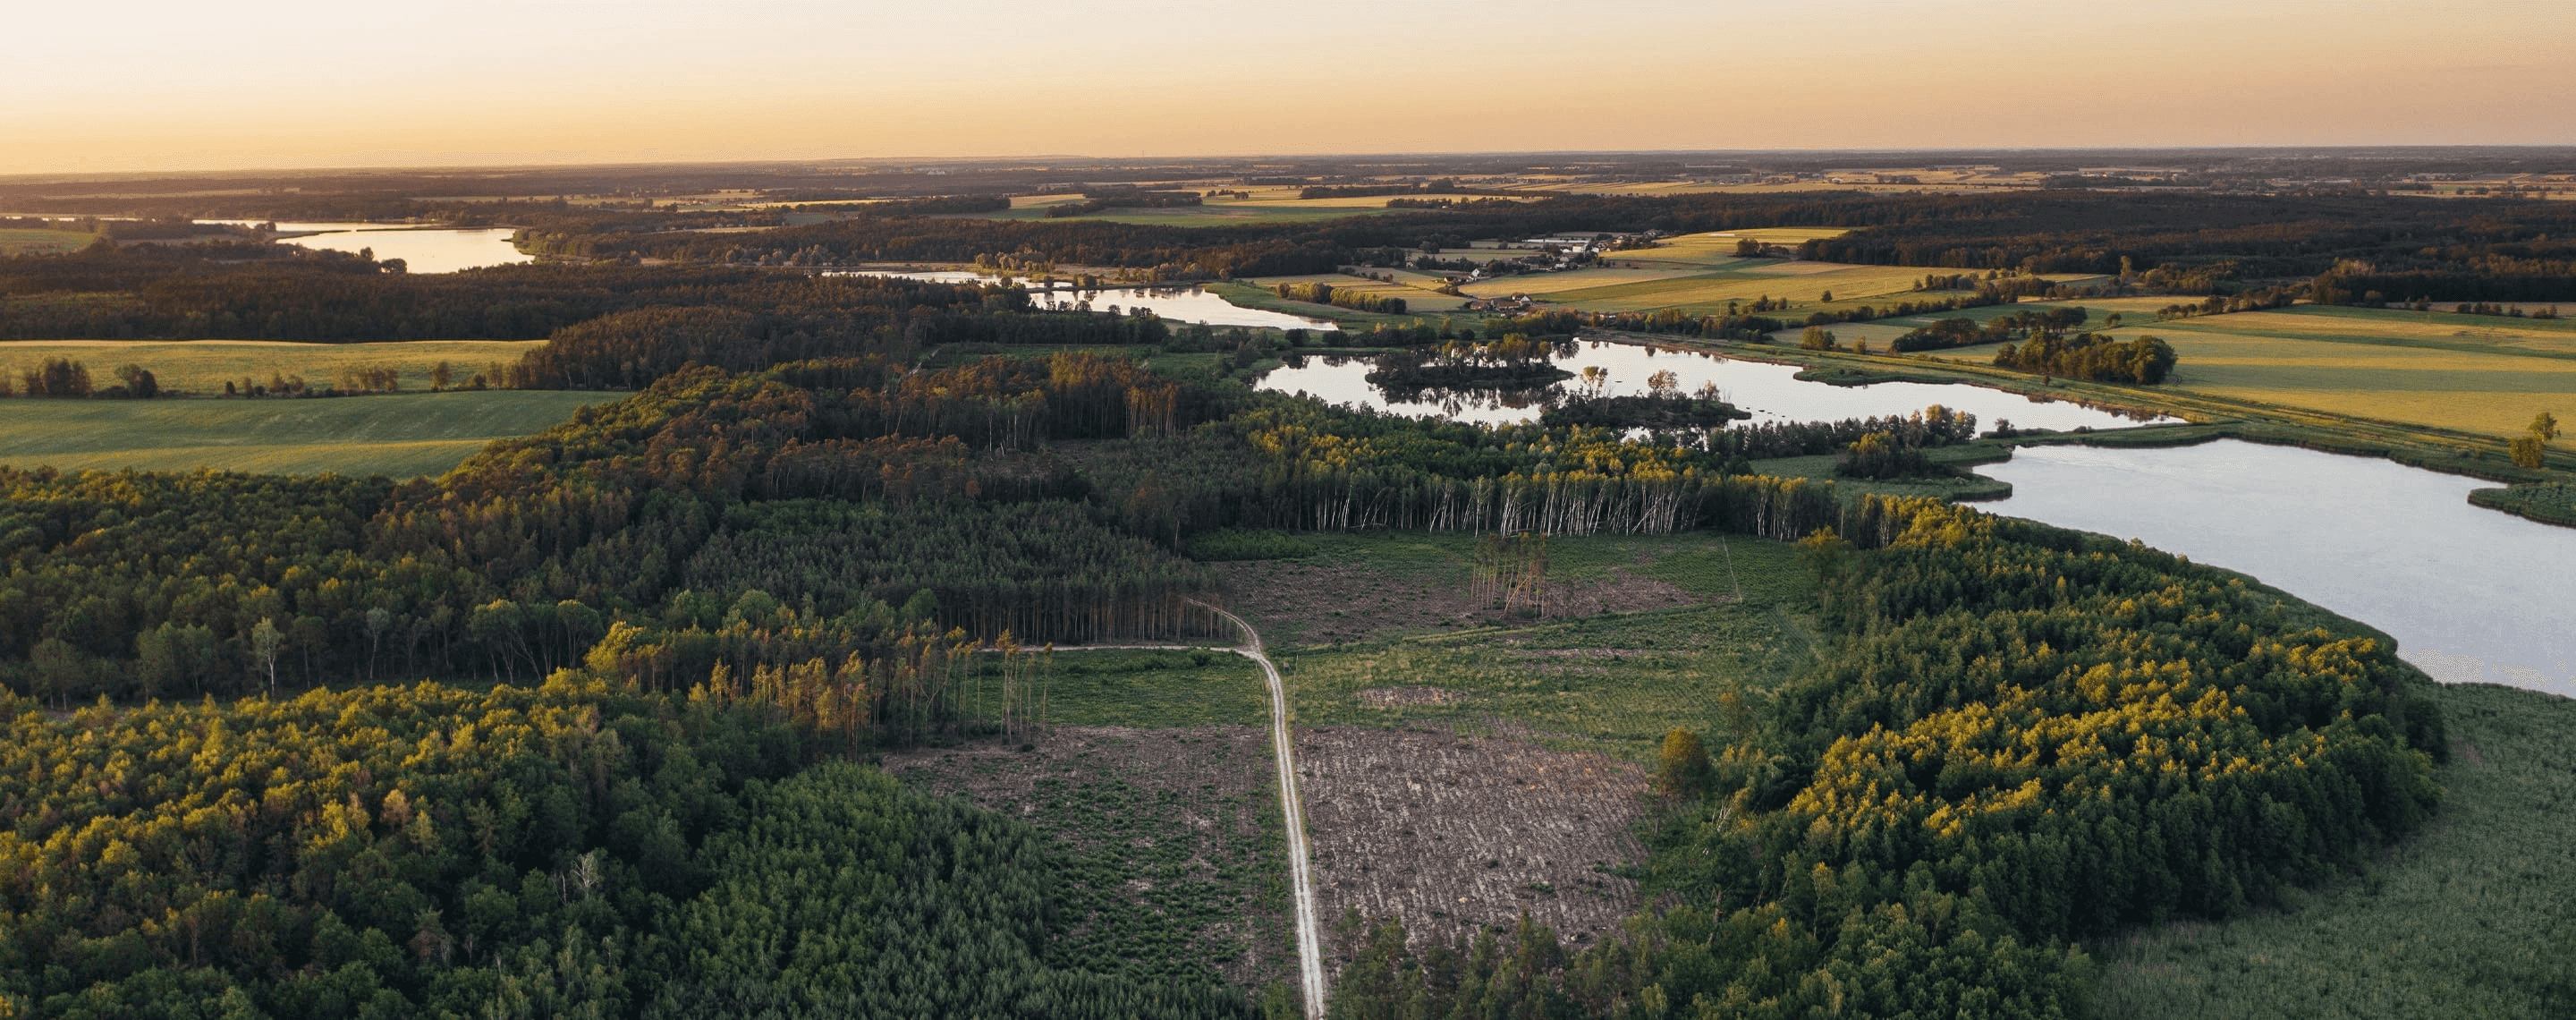 Landschaftsbild von Polen